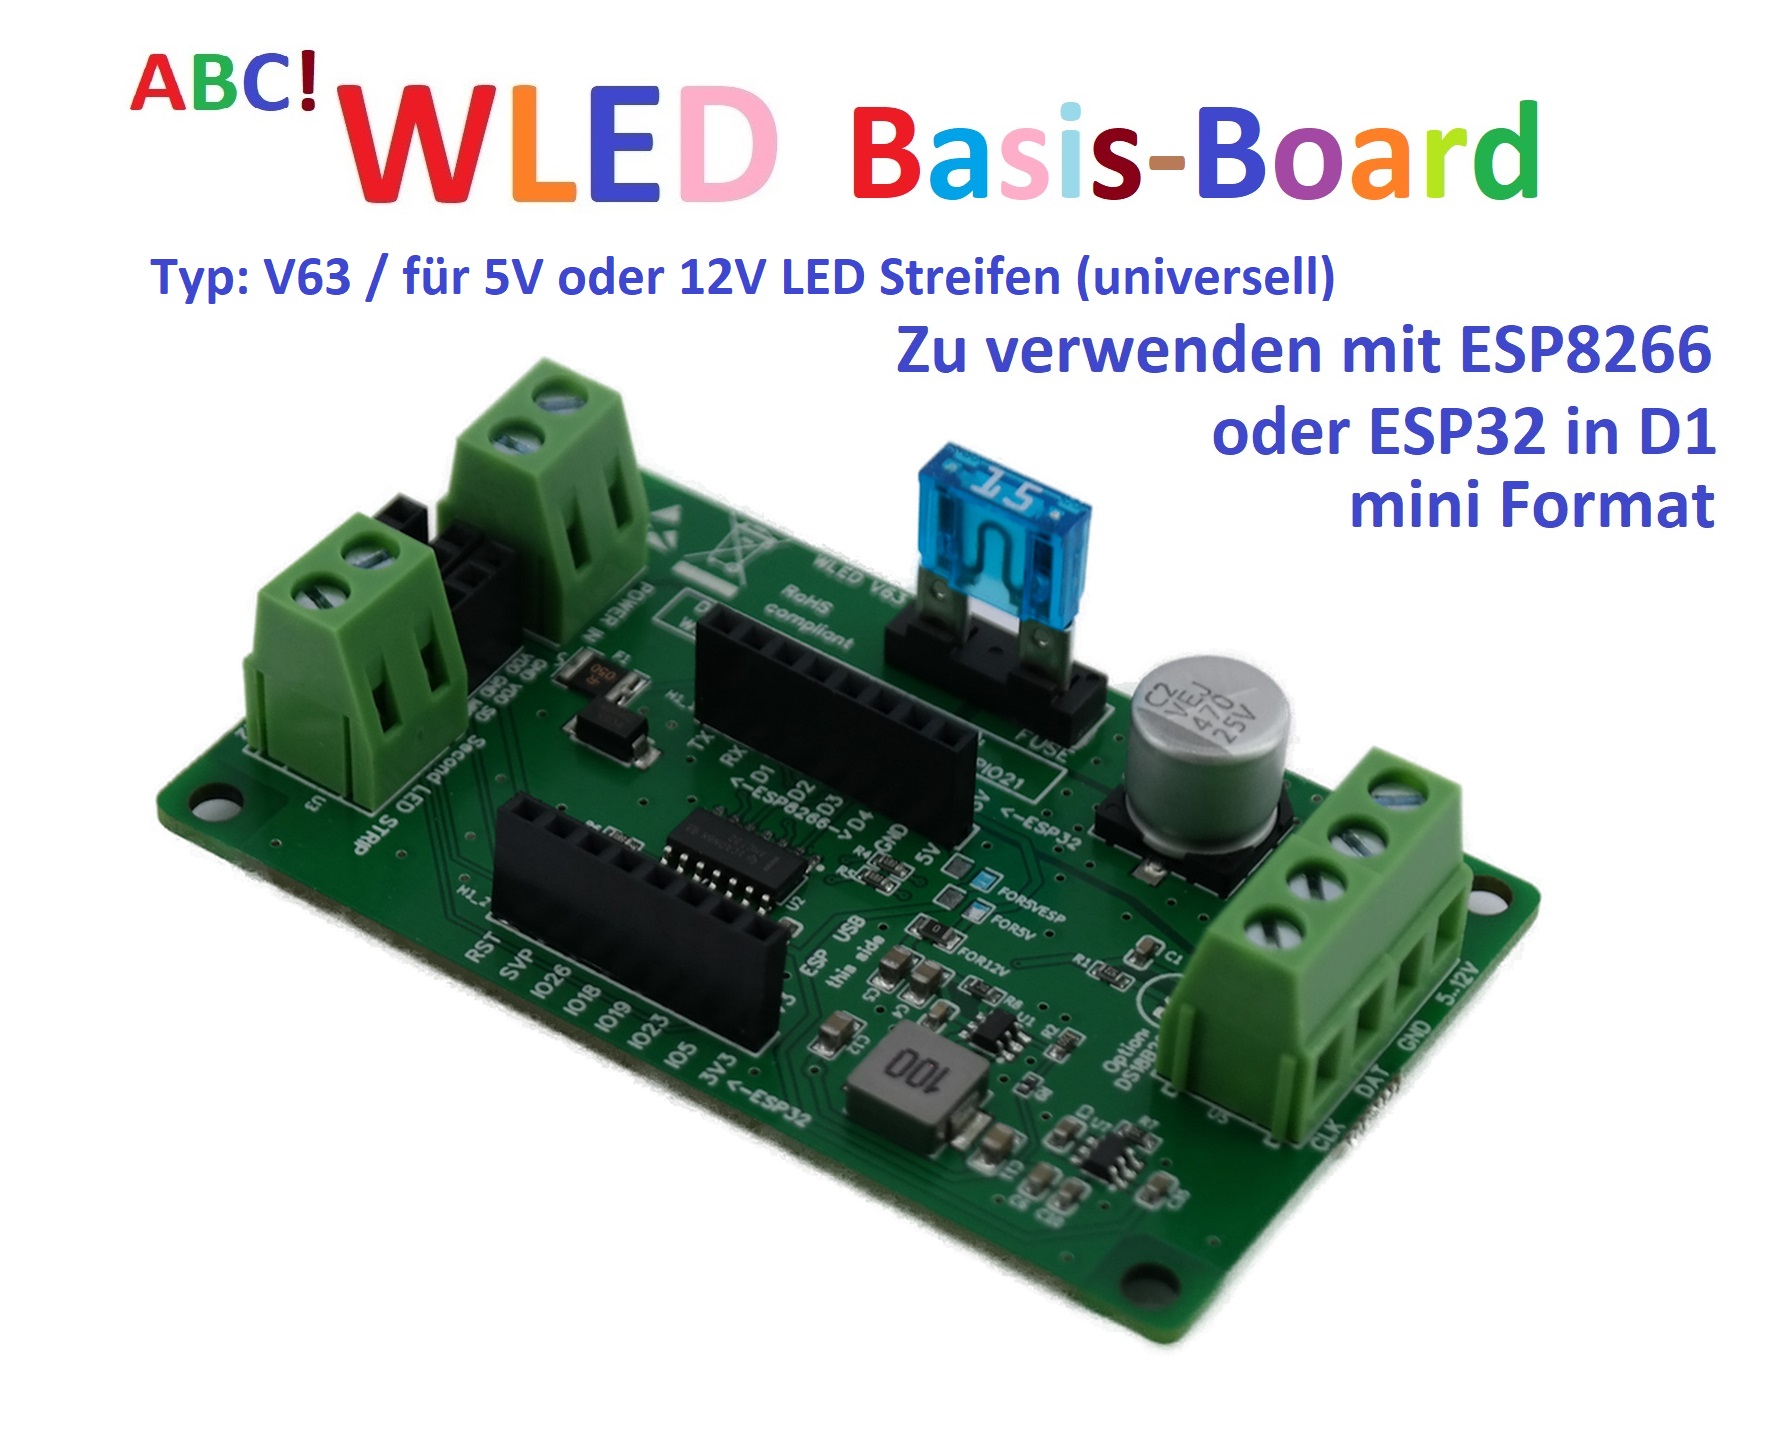 ABC! WLED shield for 5V and 12V LED (universal, V63)